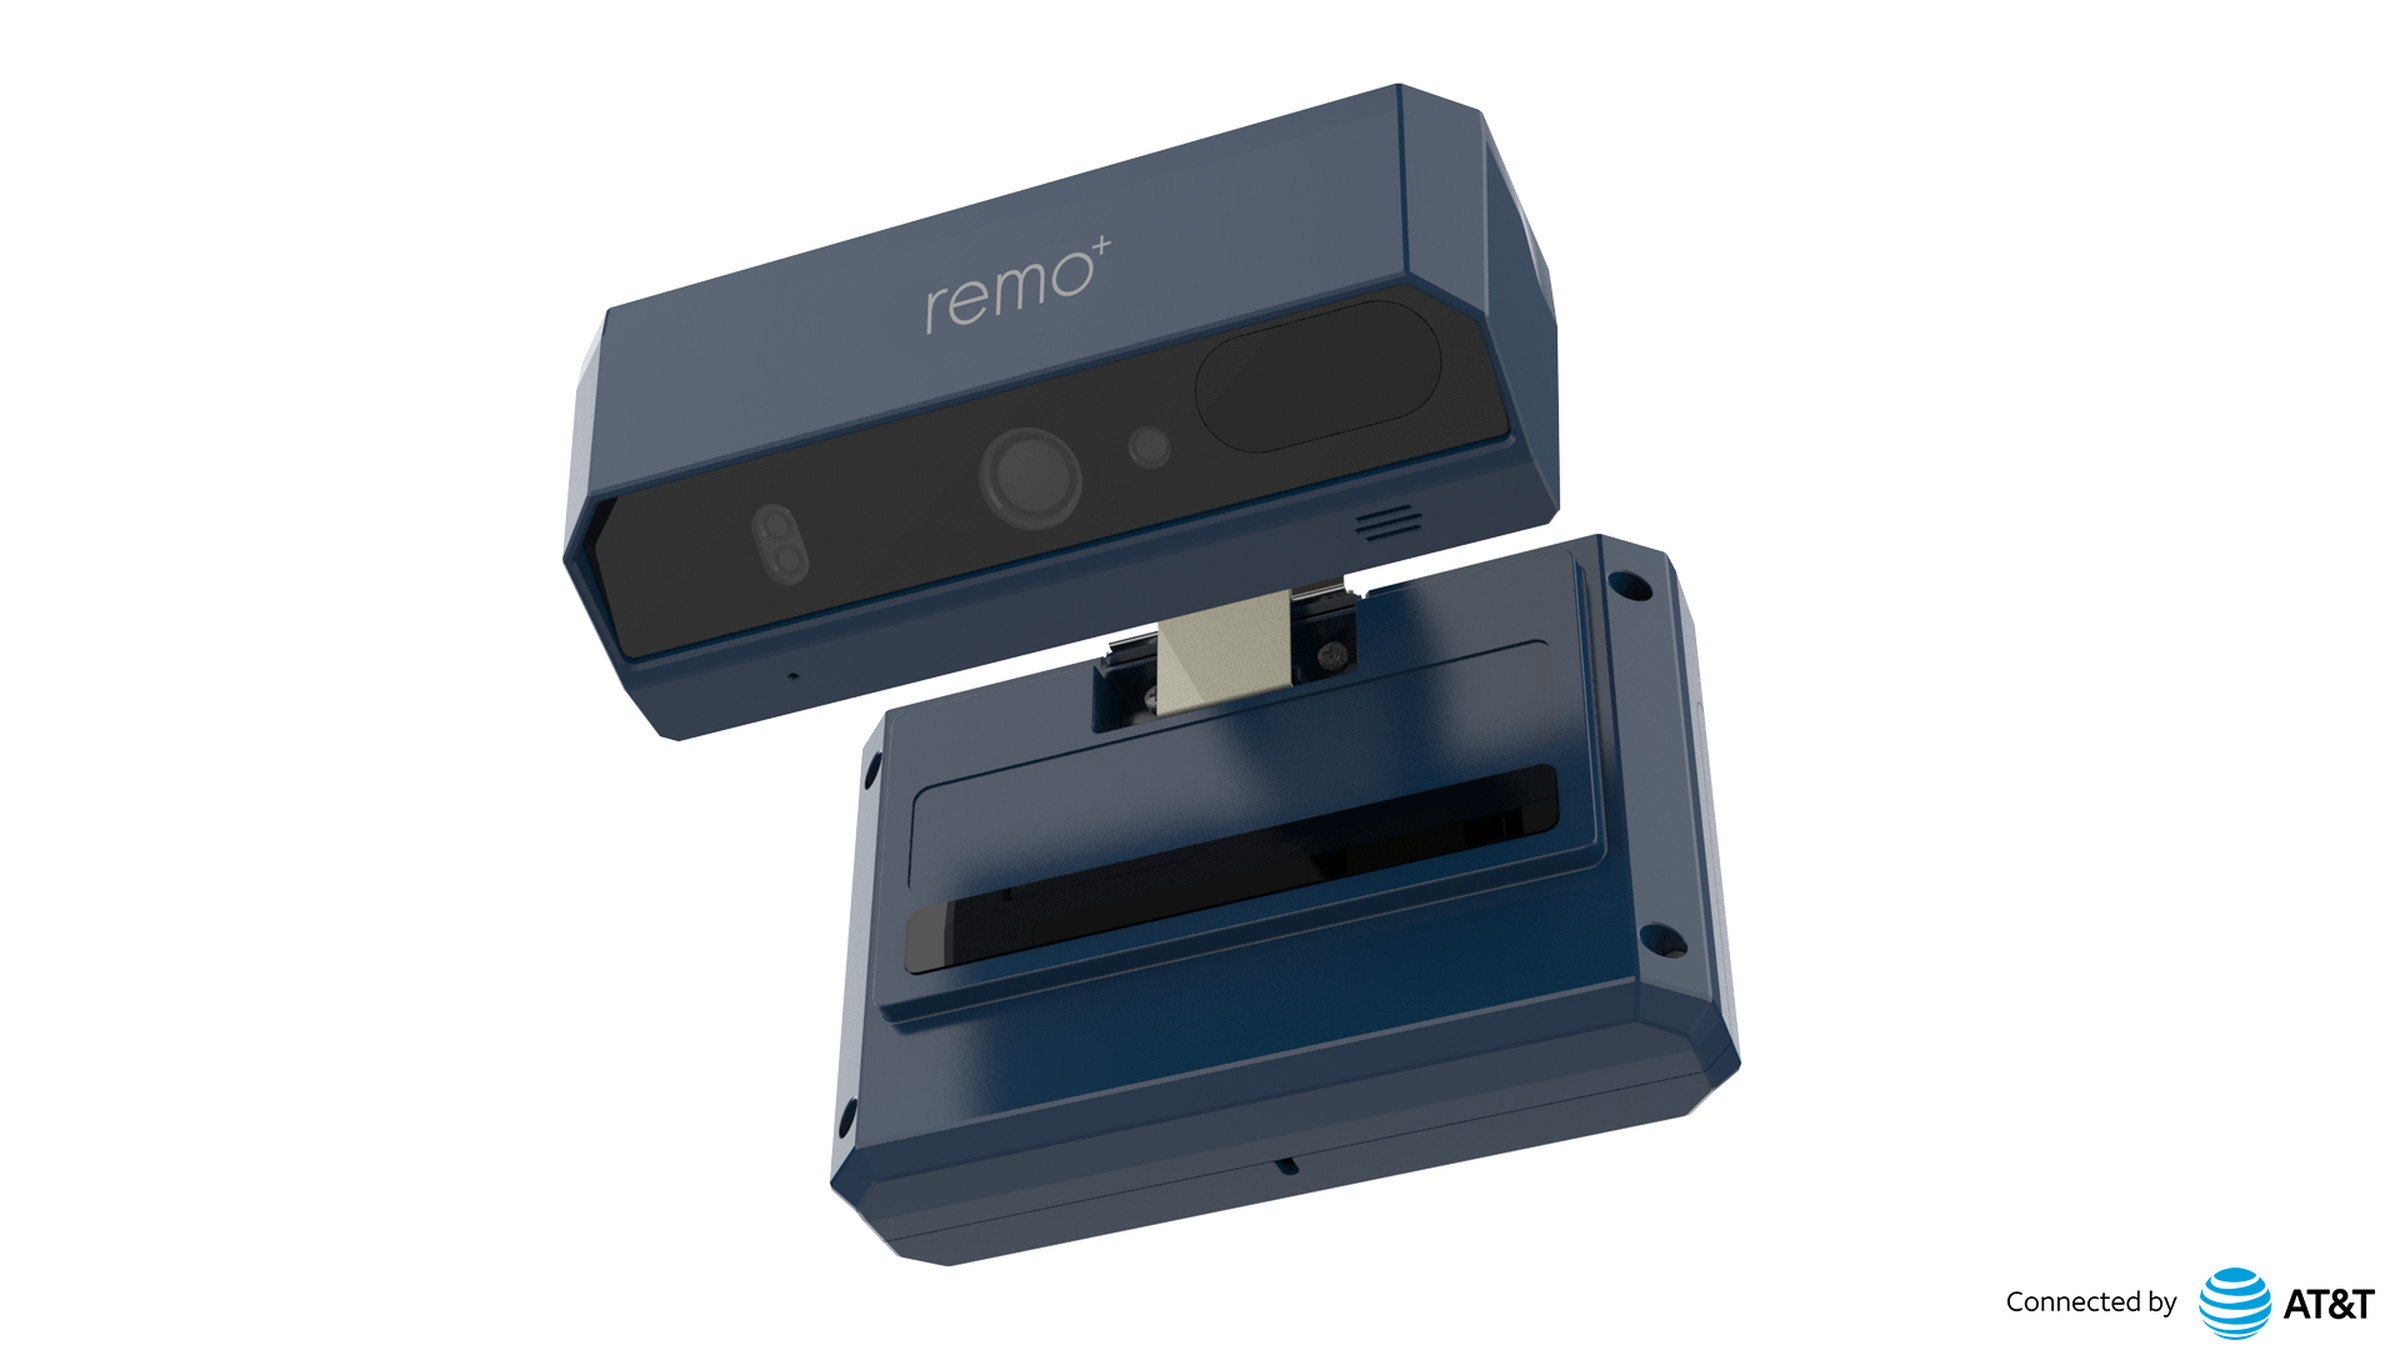 A photo of the Remo Plus DoorCam 3 Plus LTE.